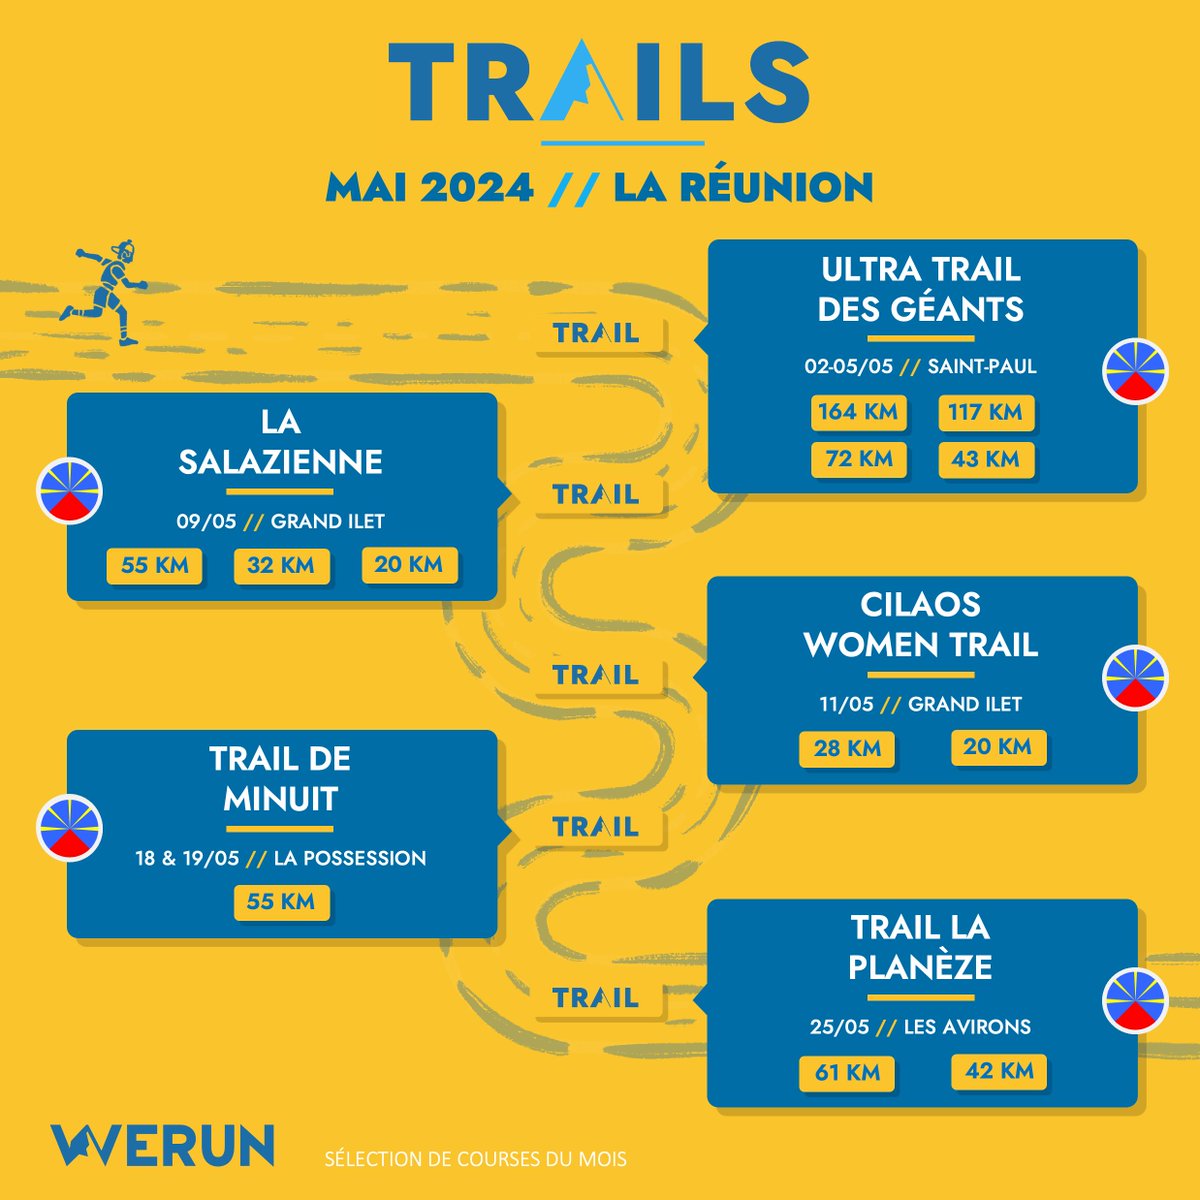 📆 𝗟𝗲𝘀 𝘁𝗿𝗮𝗶𝗹𝘀 𝗮 𝗟𝗮 𝗥𝗲𝘂𝗻𝗶𝗼𝗻
Sélection des trails du mois de mai à La Réunion 🏃🏻‍♂️👉 bit.ly/calendrier_reu… #werun #wearerunning